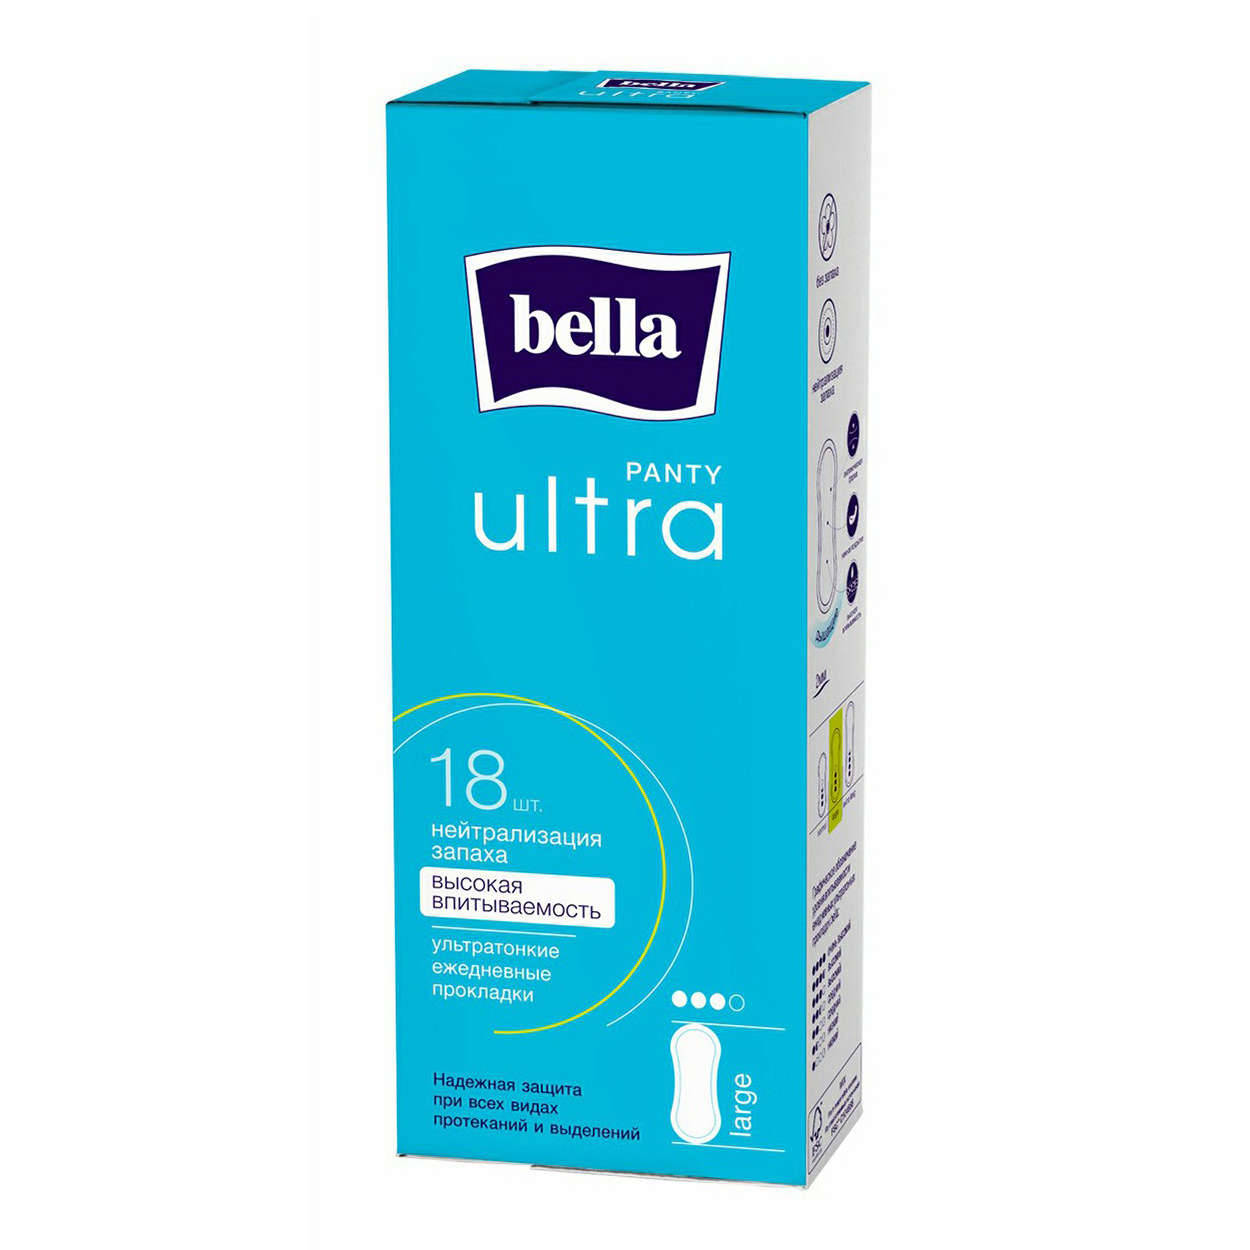 Прокладки без крылышек ежедневные Bella Panty Ultra Large 18 шт ежедневные прокладки bella panty soft 20 шт